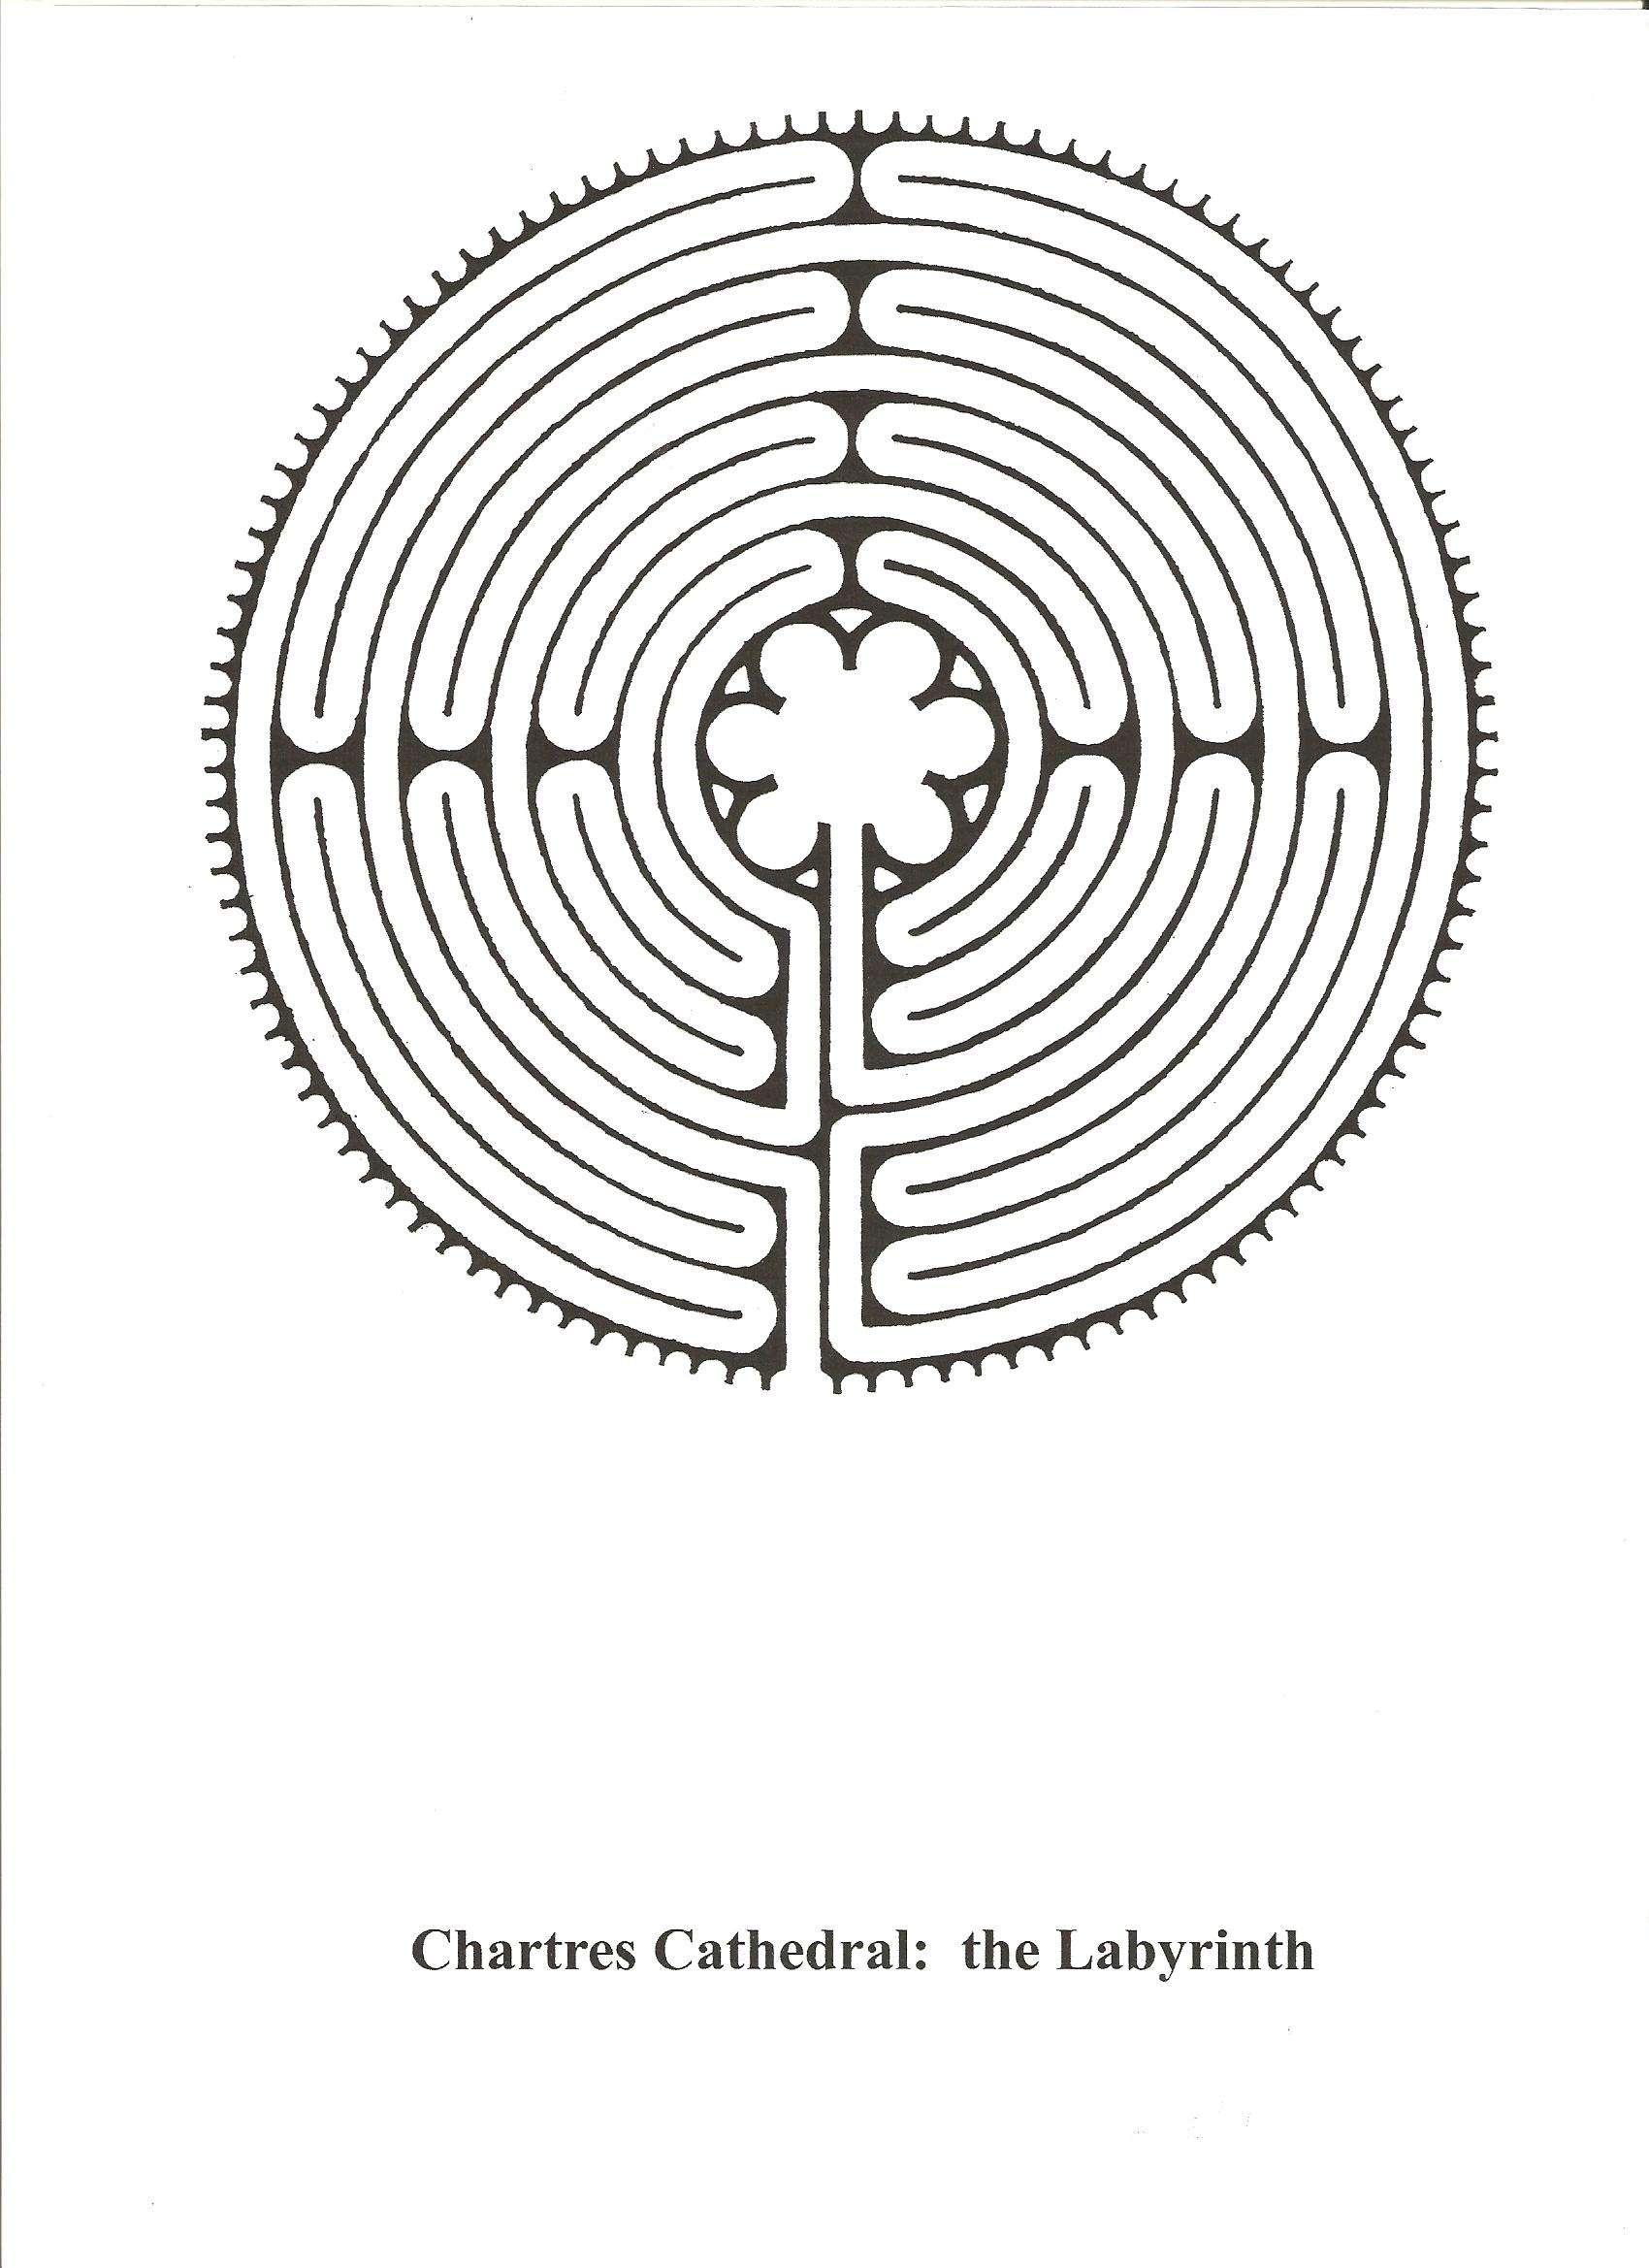 La catedral como símbolo del camino espiritual - Chartres: Arte, espiritualidad y esoterismo. (1)